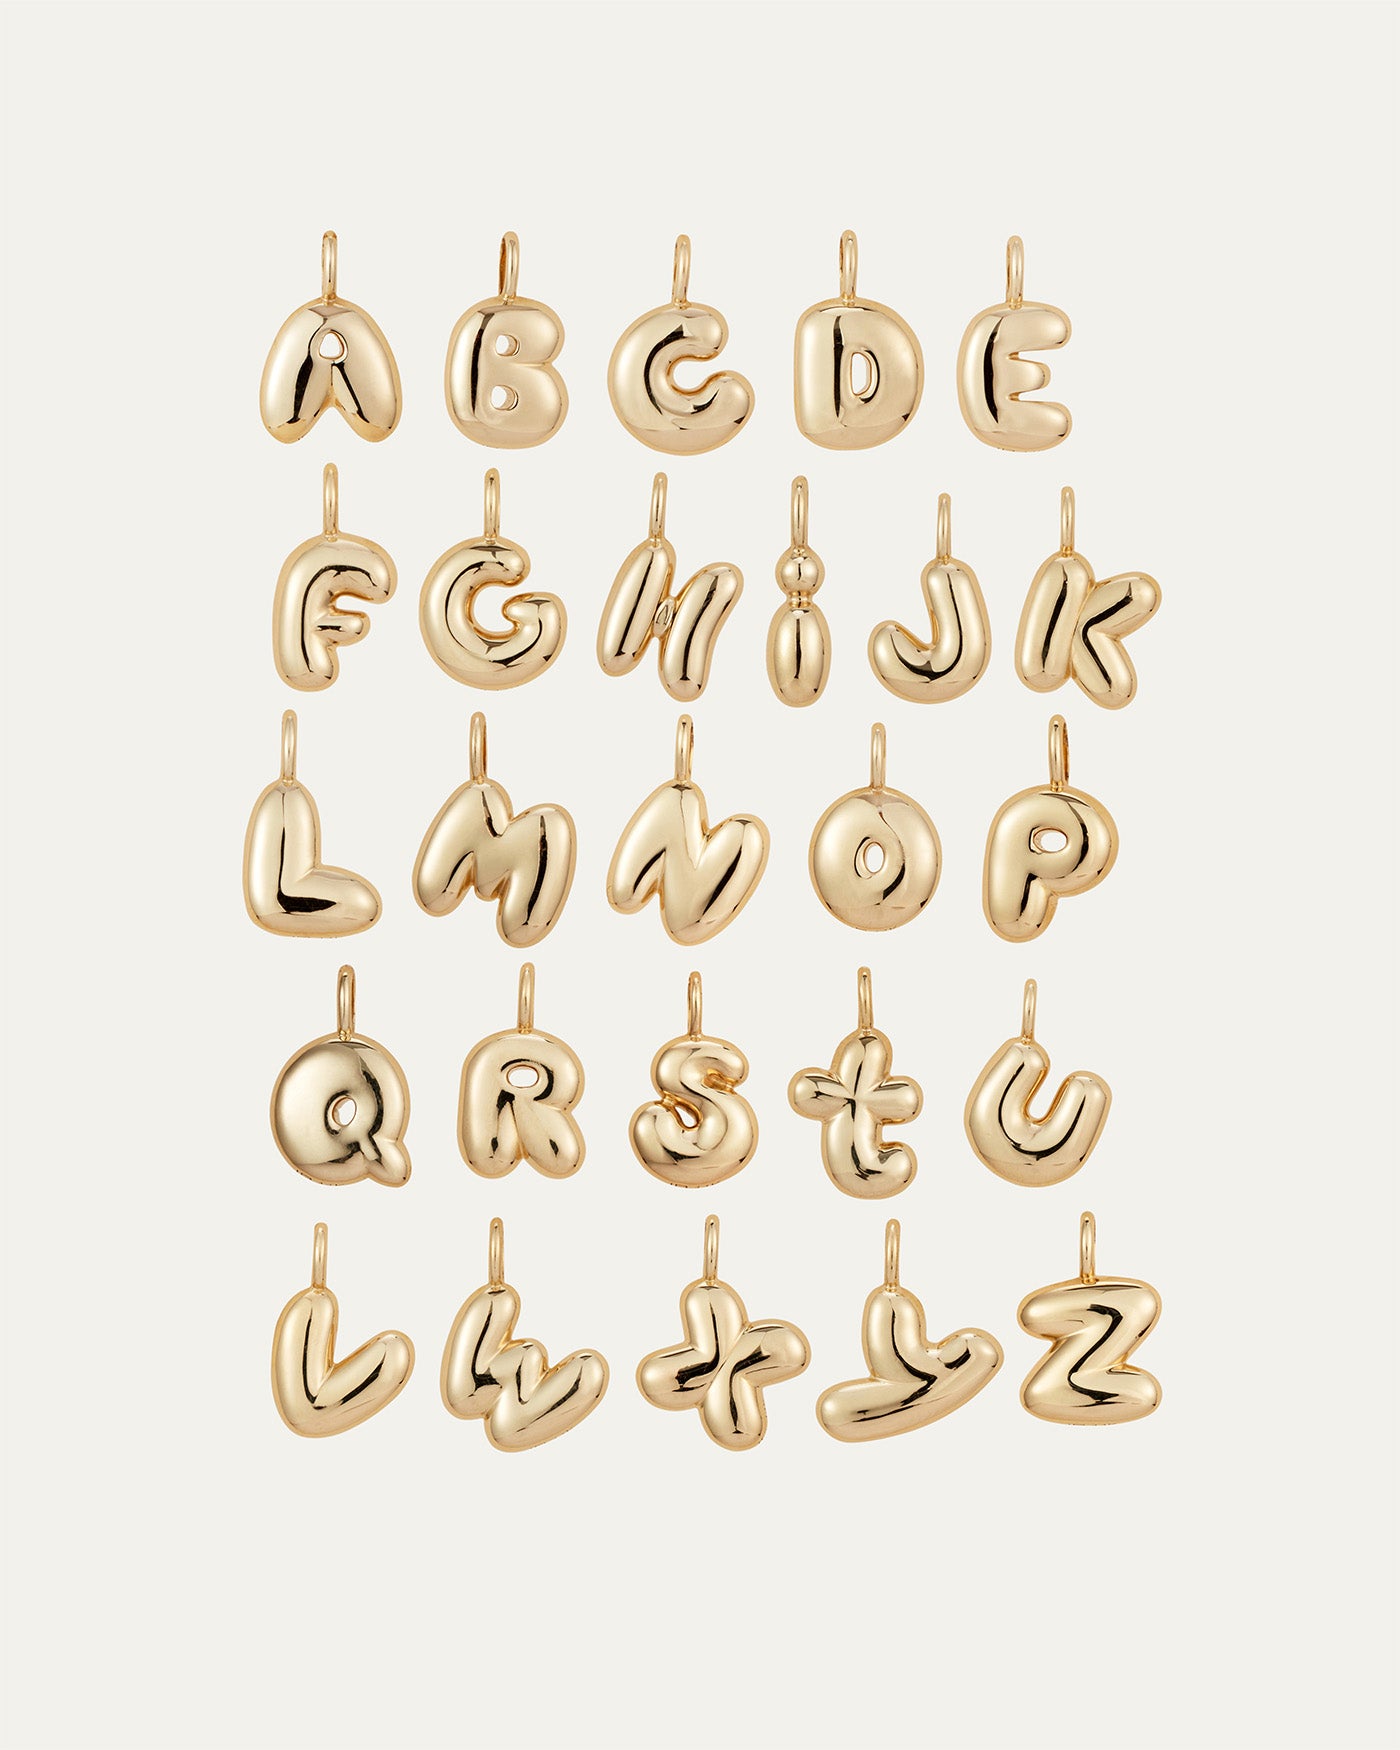 14K Gold Bubble Letter Necklace - P